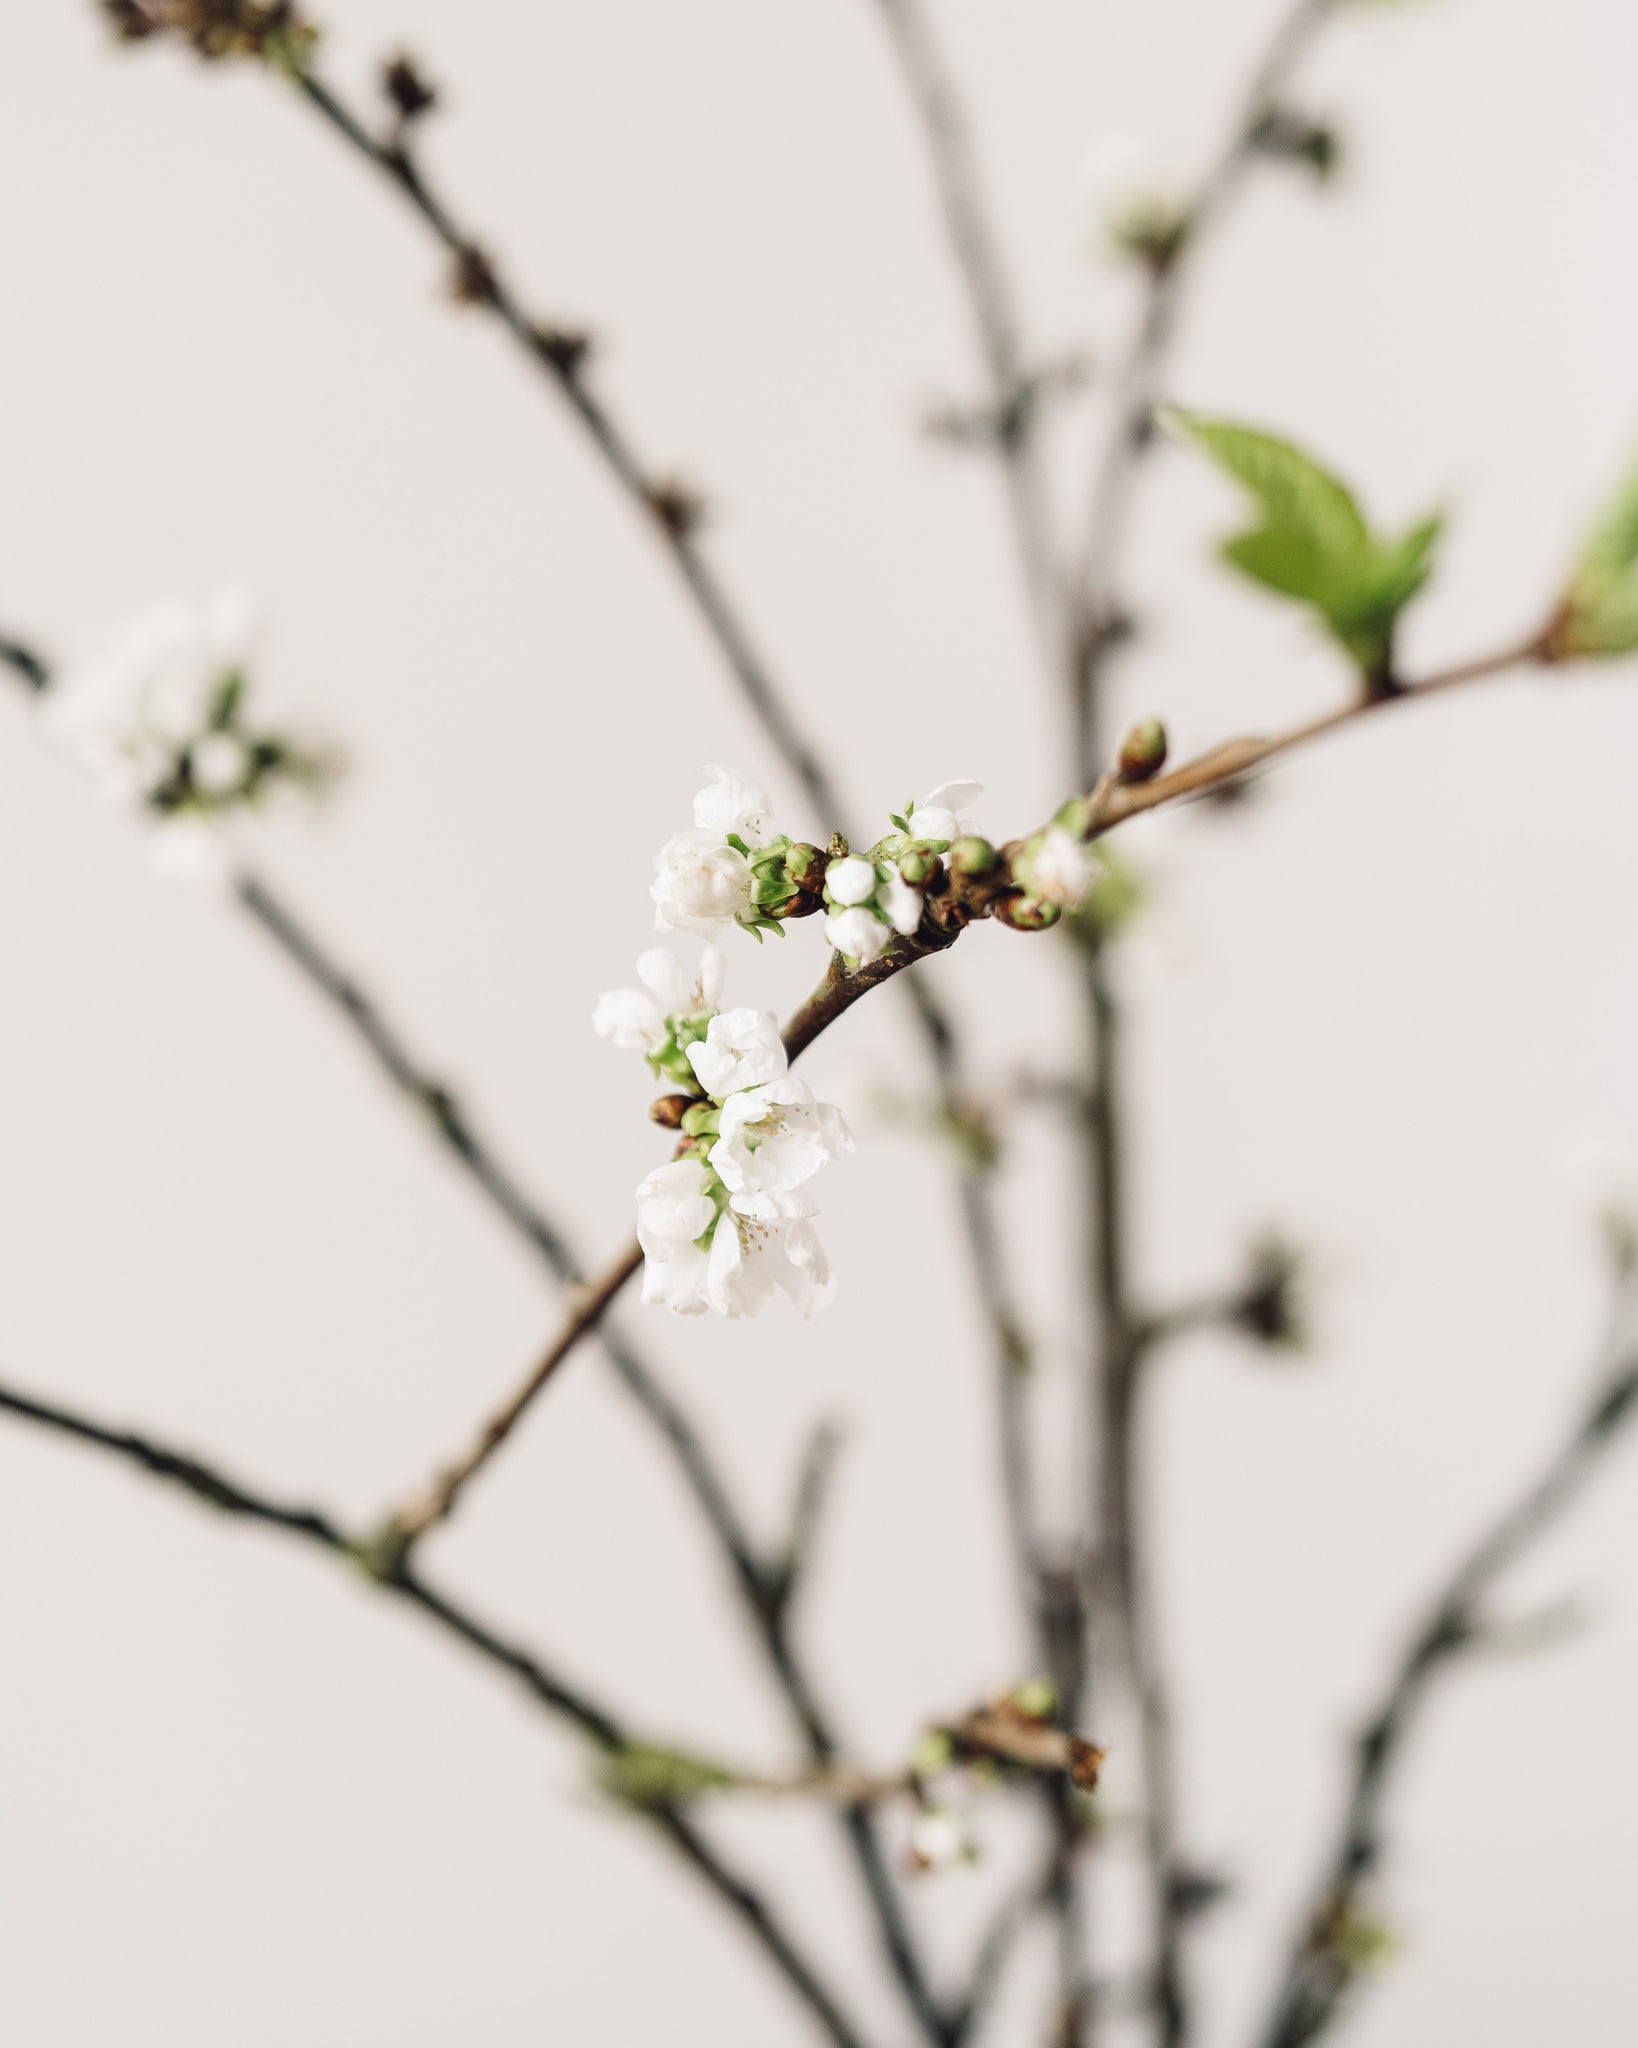 Cherry Blossom Branches, White